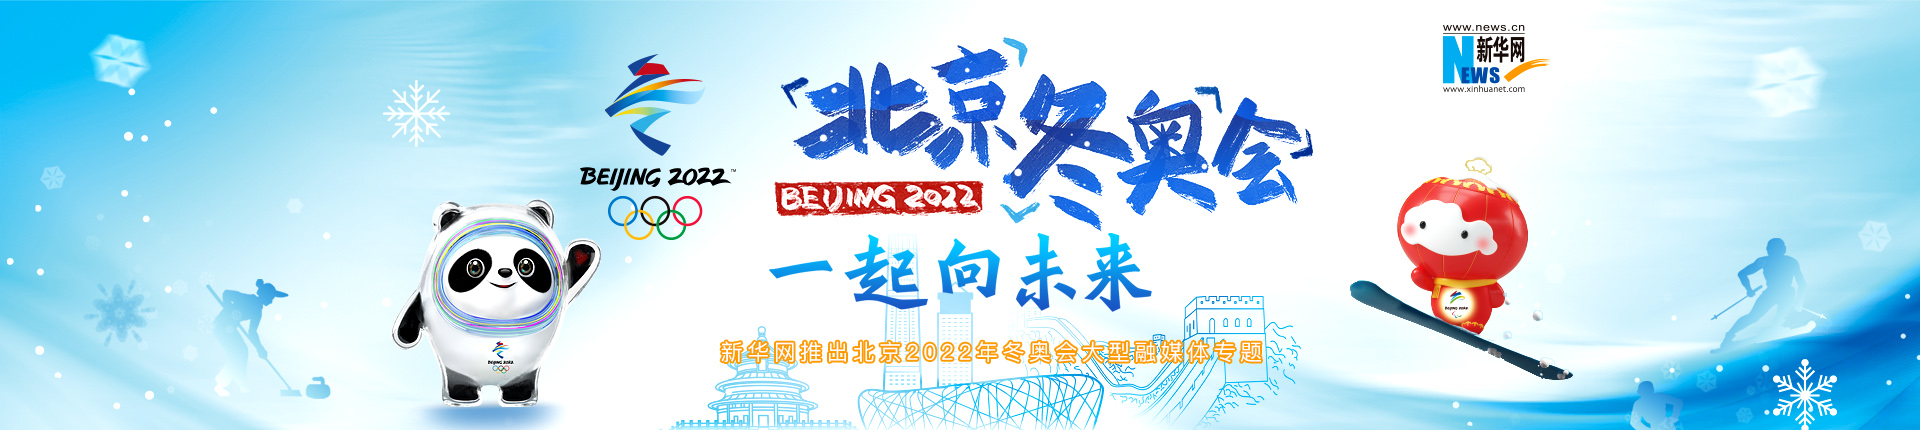 新華網推出北京2022年冬奧會大型融媒體專題